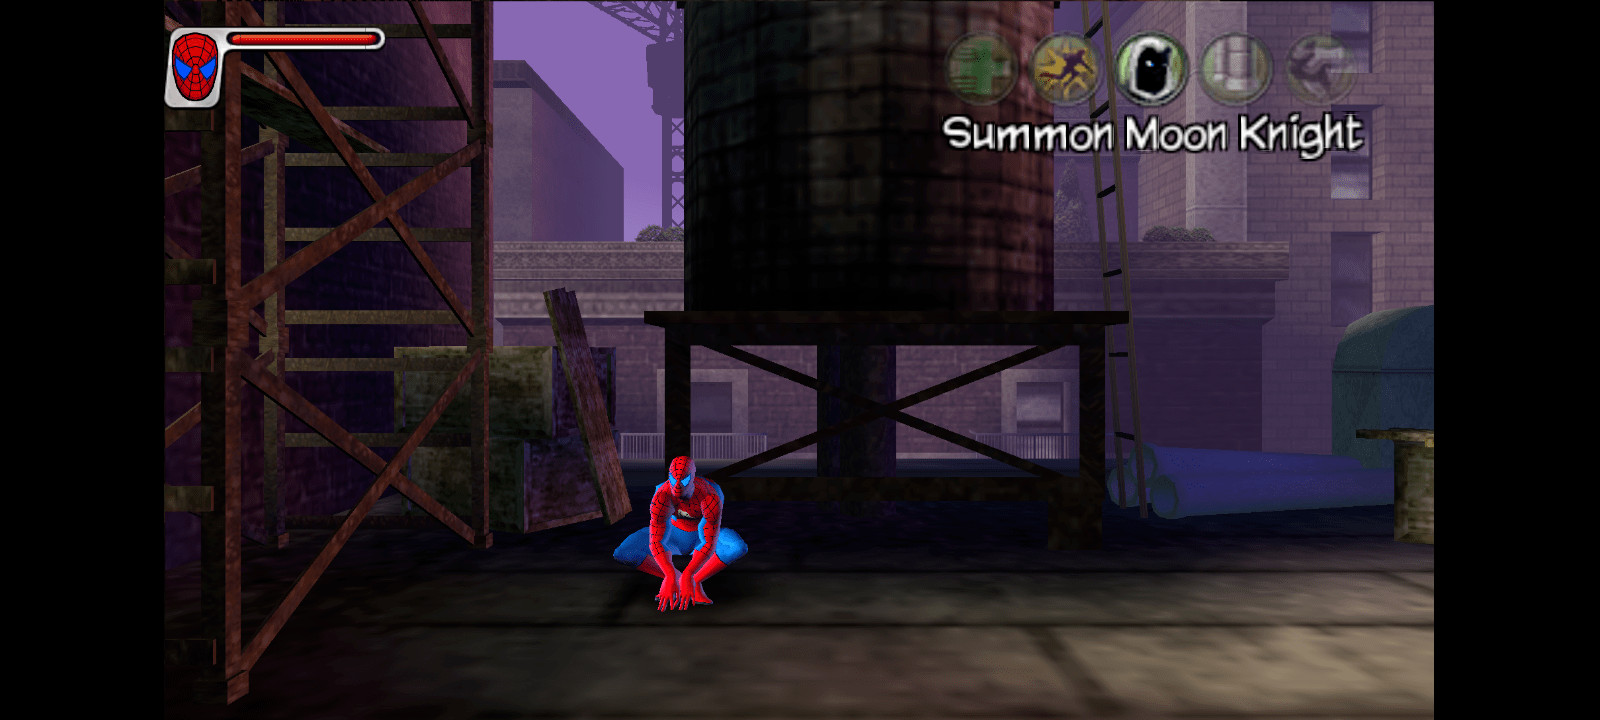 Spider-man Web of Shadows mod PSP by TNUM on DeviantArt